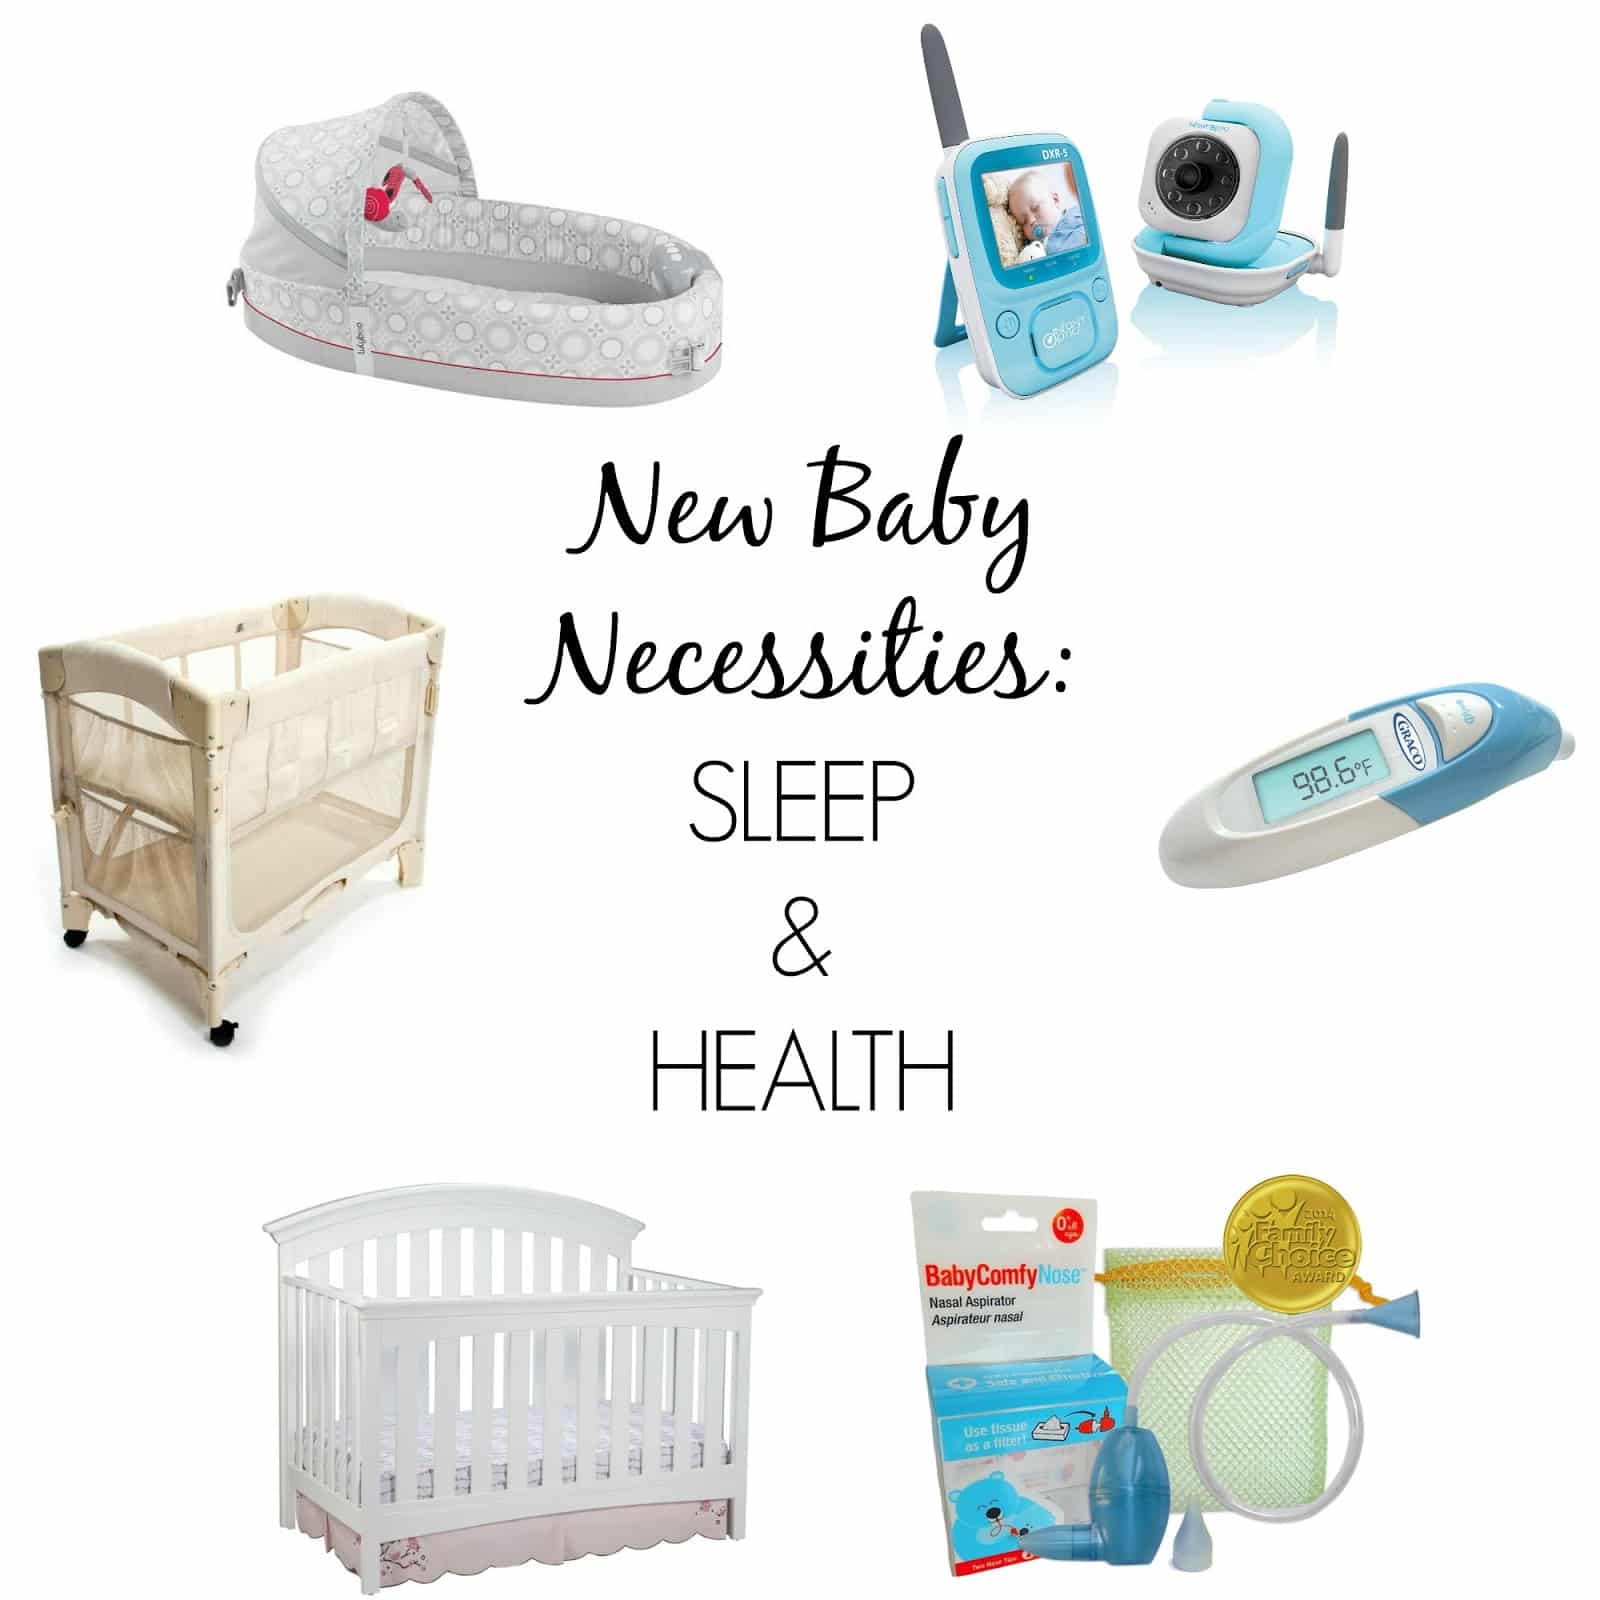 6 New Baby Necessities